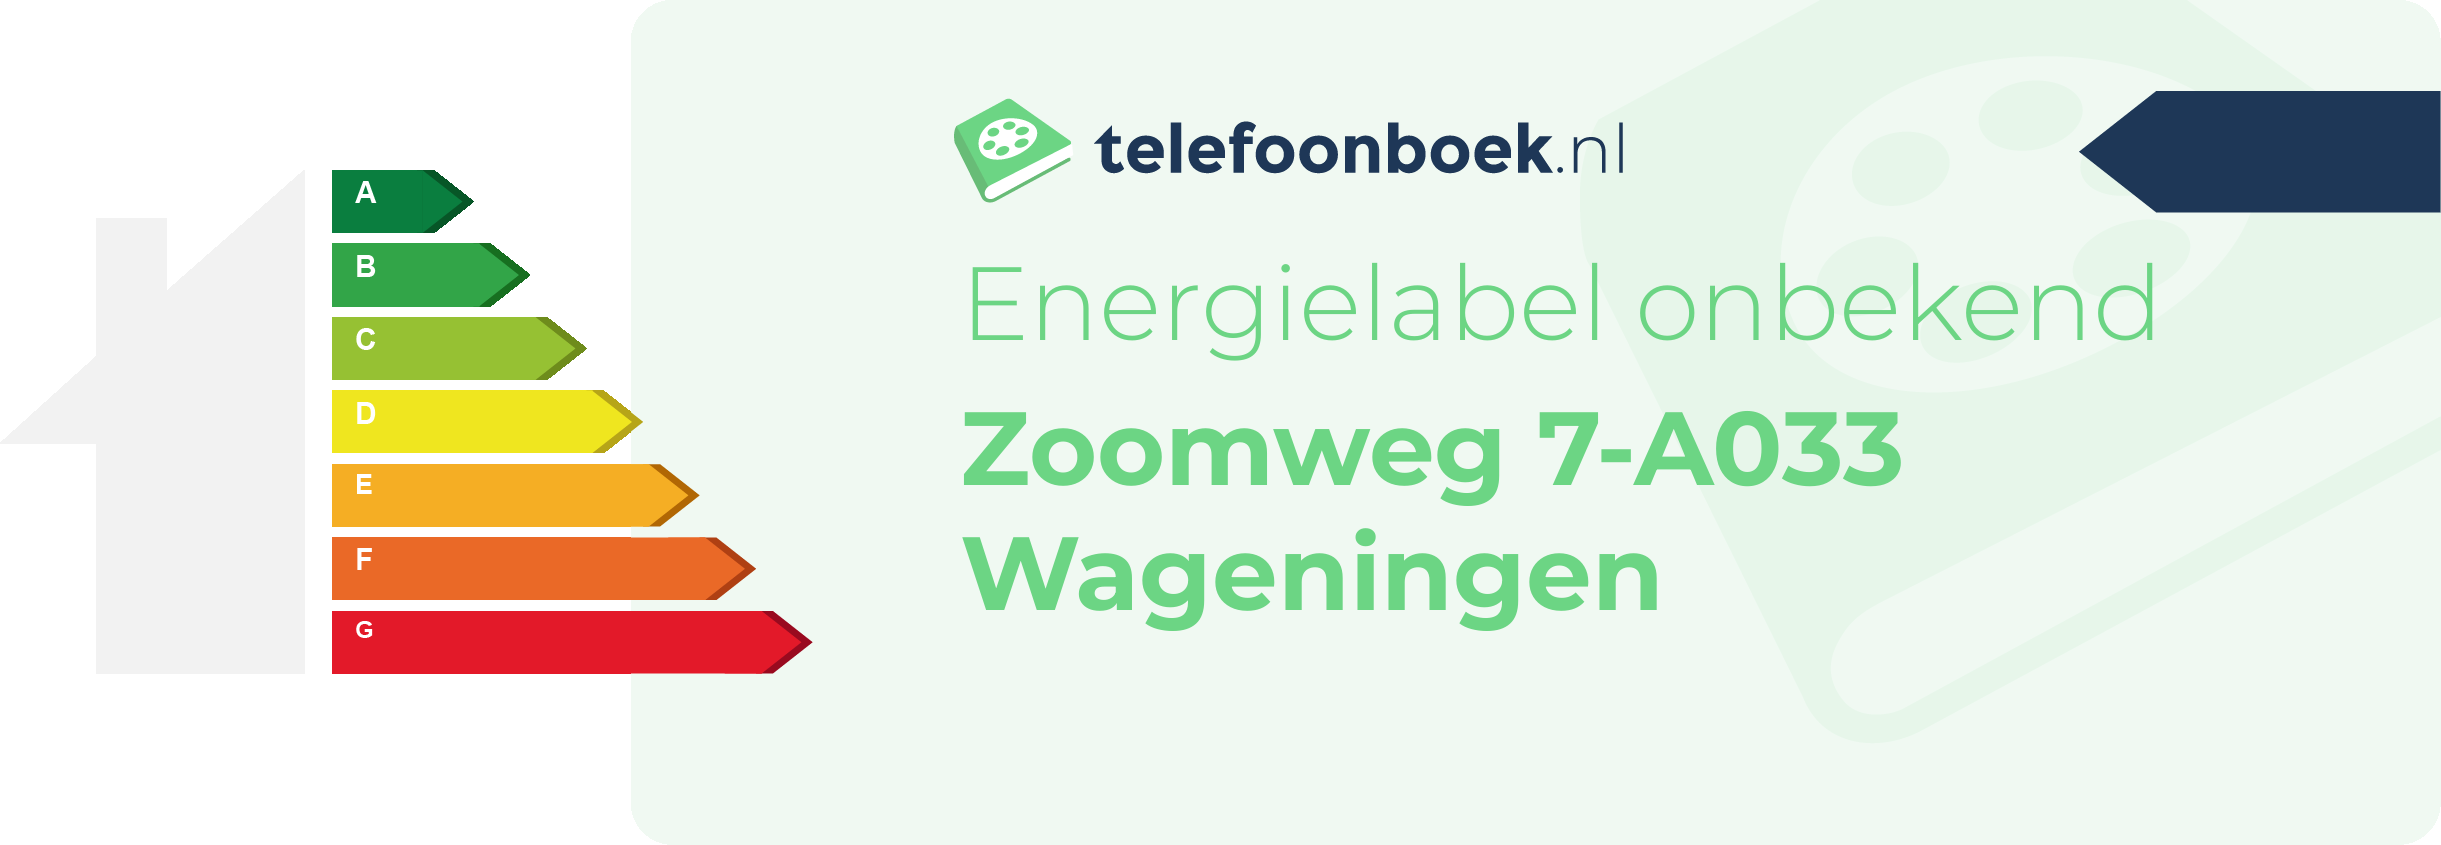 Energielabel Zoomweg 7-A033 Wageningen